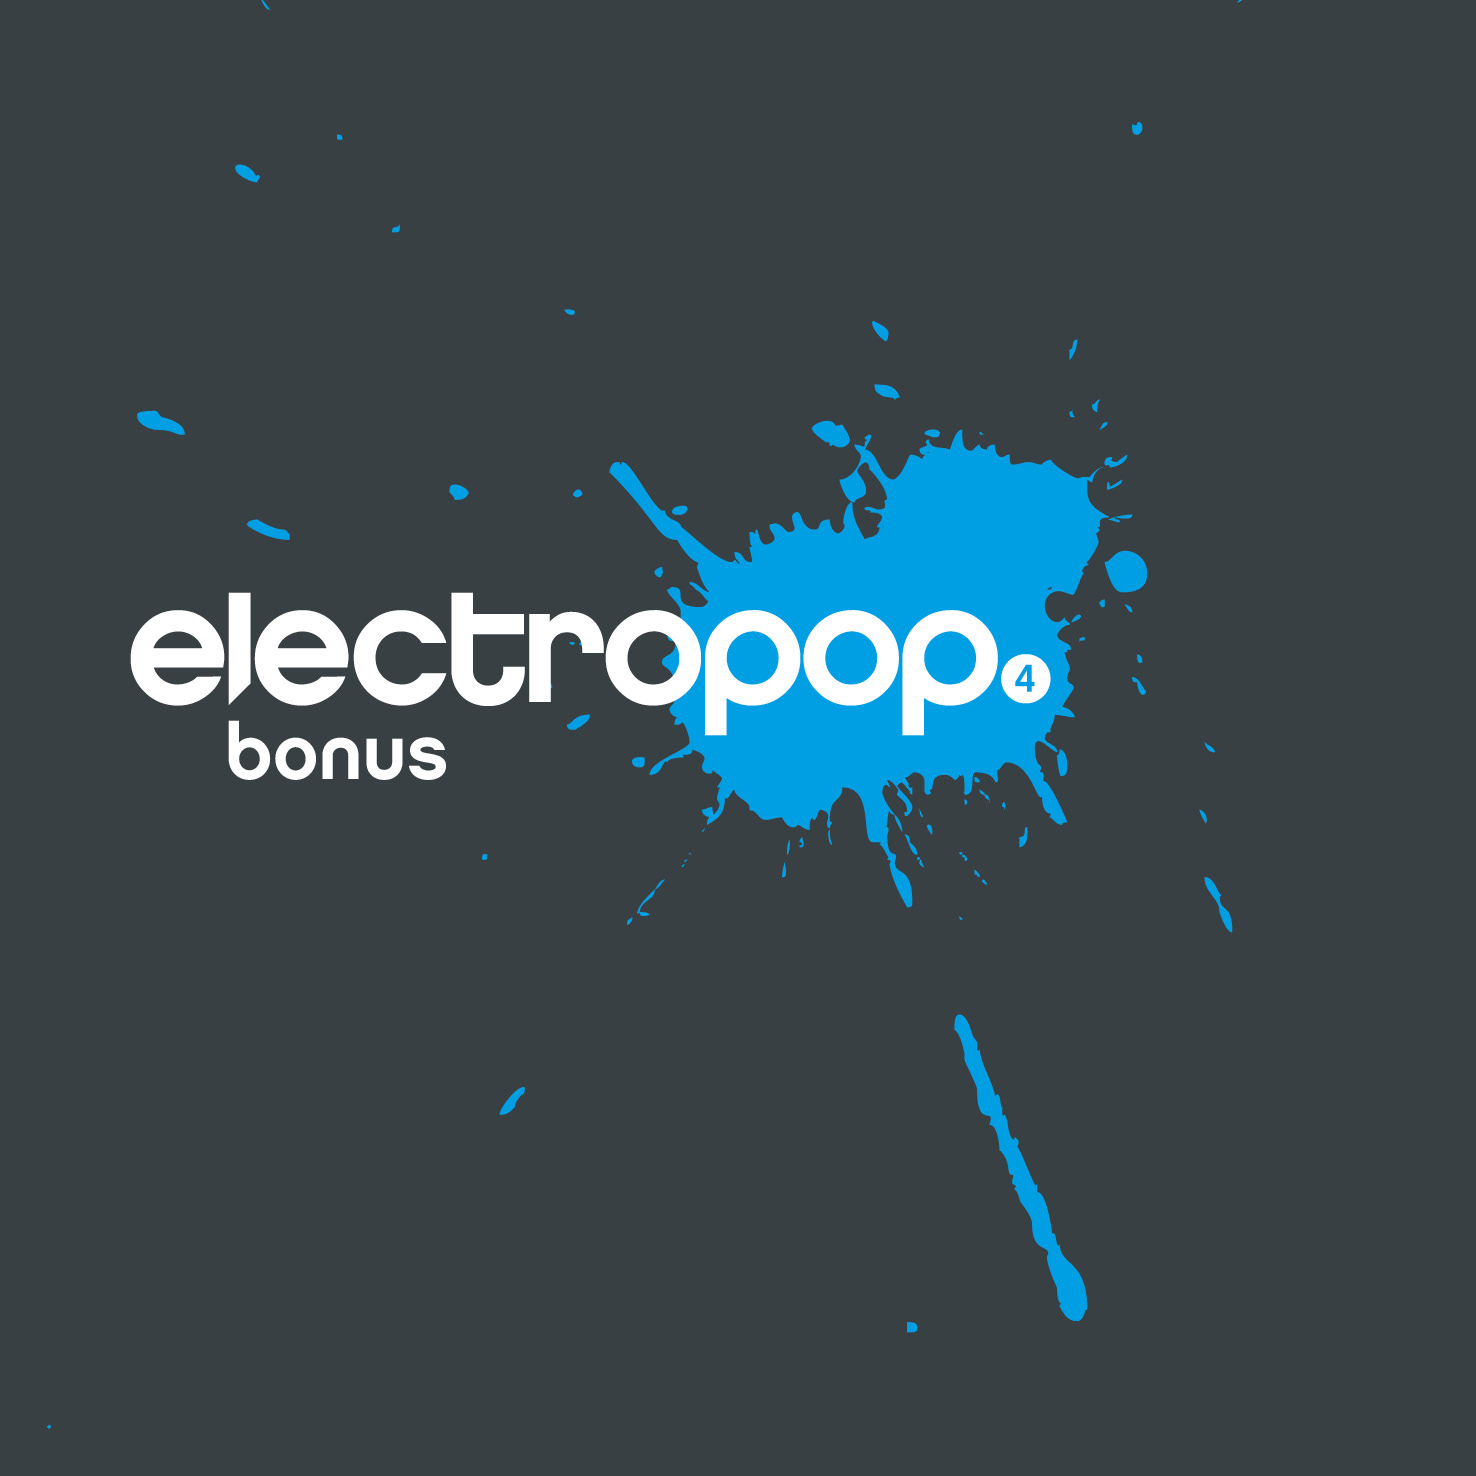 electropop.22 bonus 4